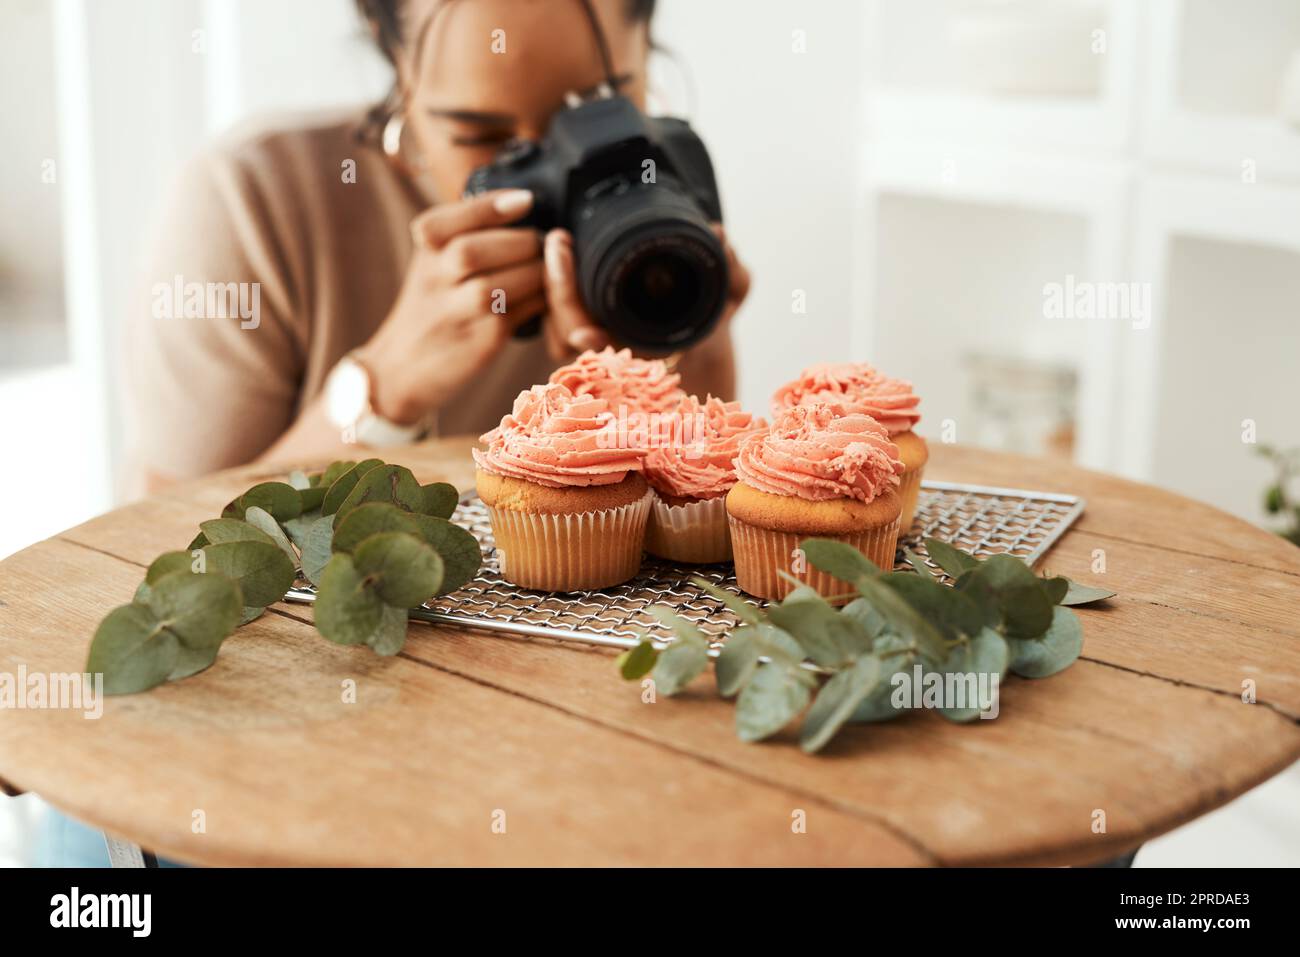 Je m'assure d'obtenir le bon angle. Une jeune femme d'affaires attrayante utilisant son appareil photo pour photographier des cupcakes pour son blog. Banque D'Images